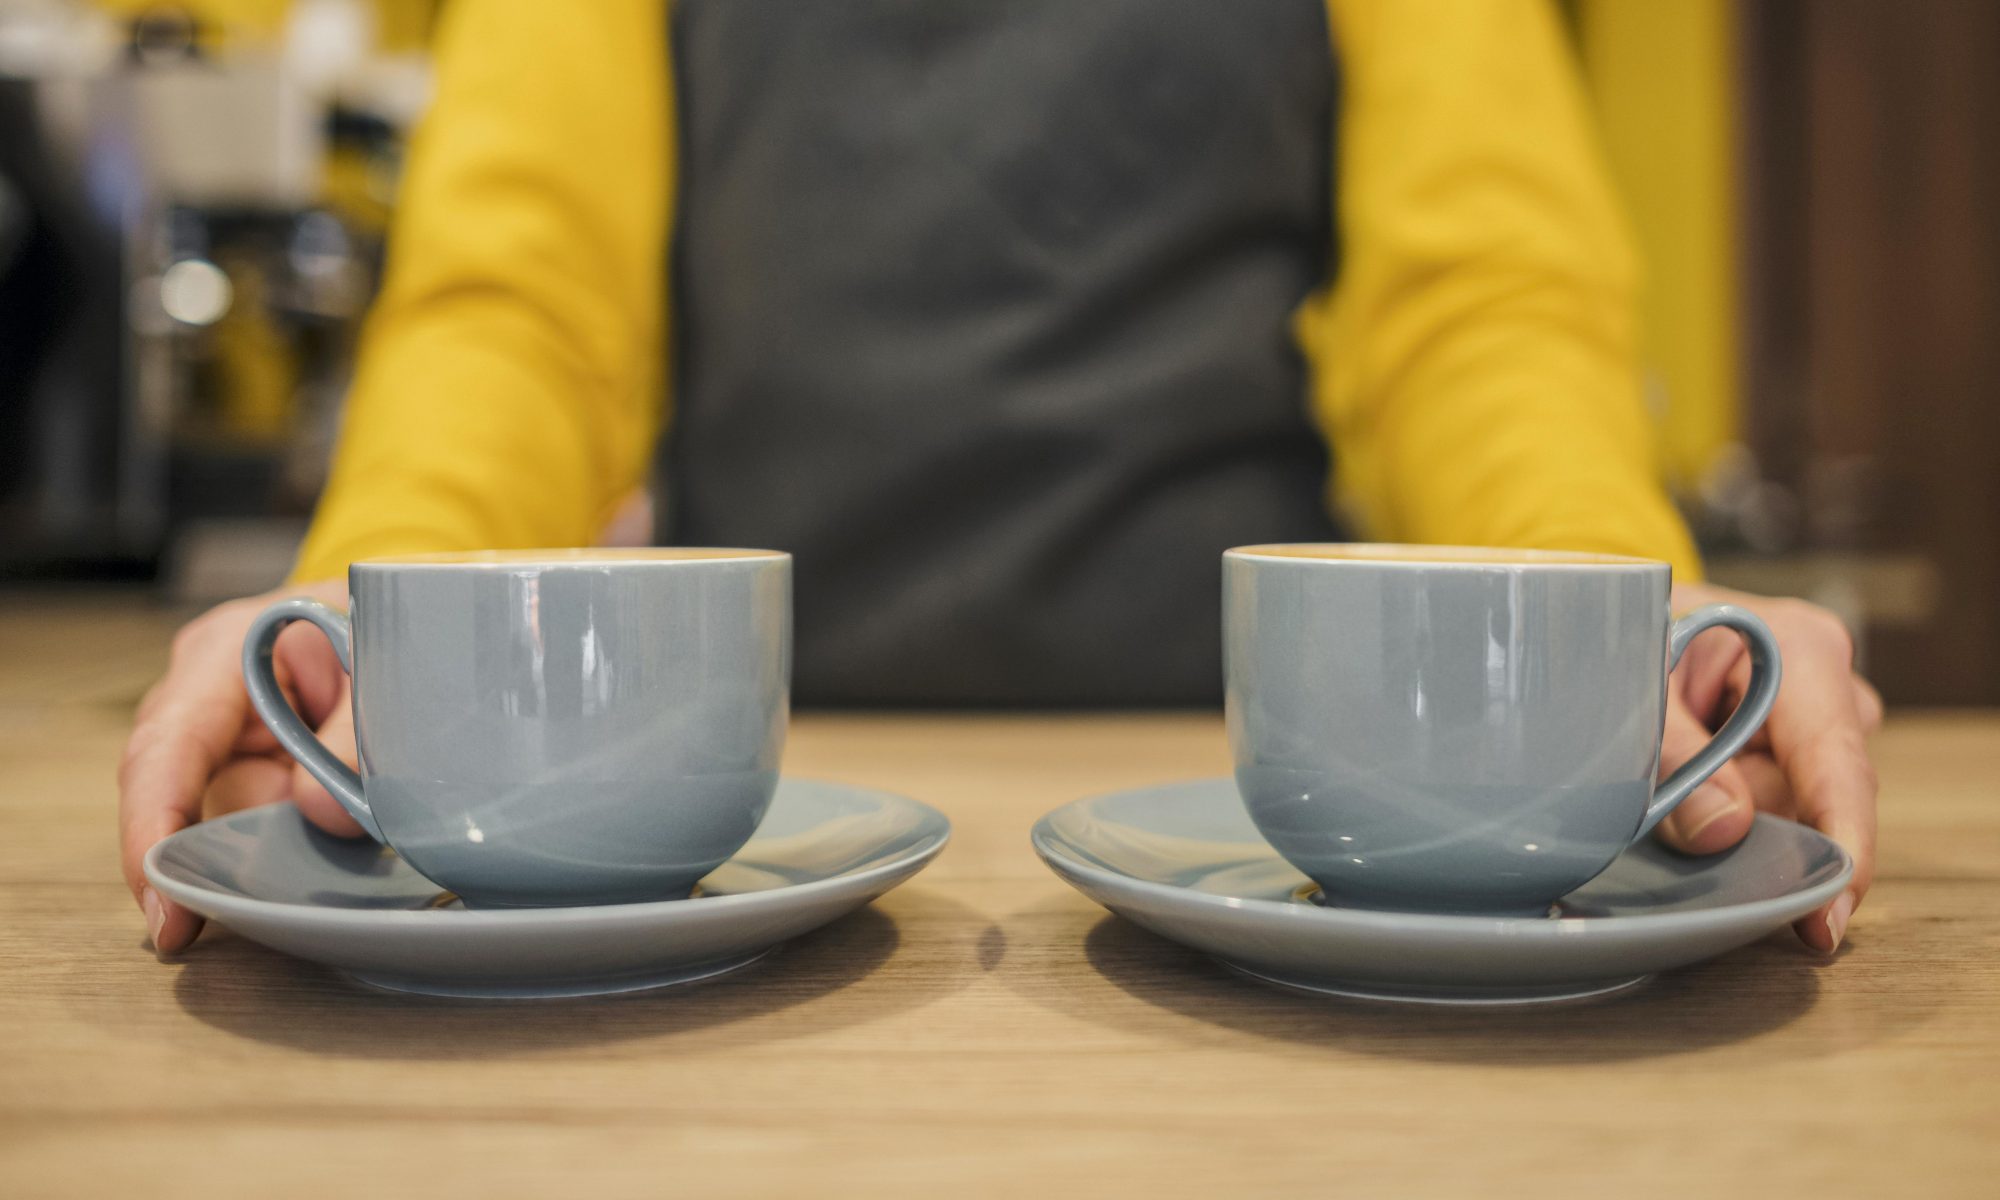 Två kaffekoppar på ett bord framför en diffus person